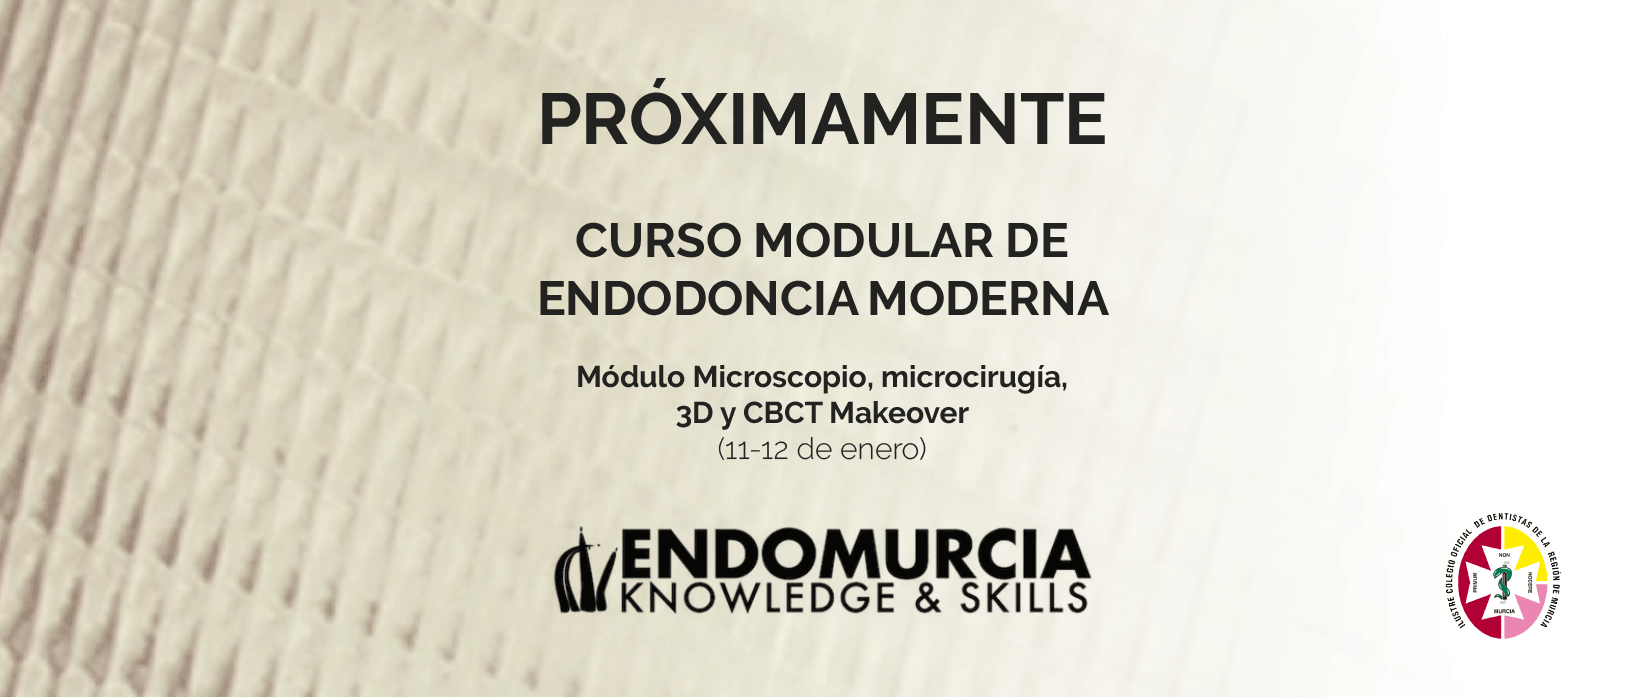 Curso modular de endodoncia moderna de EndoMurcia